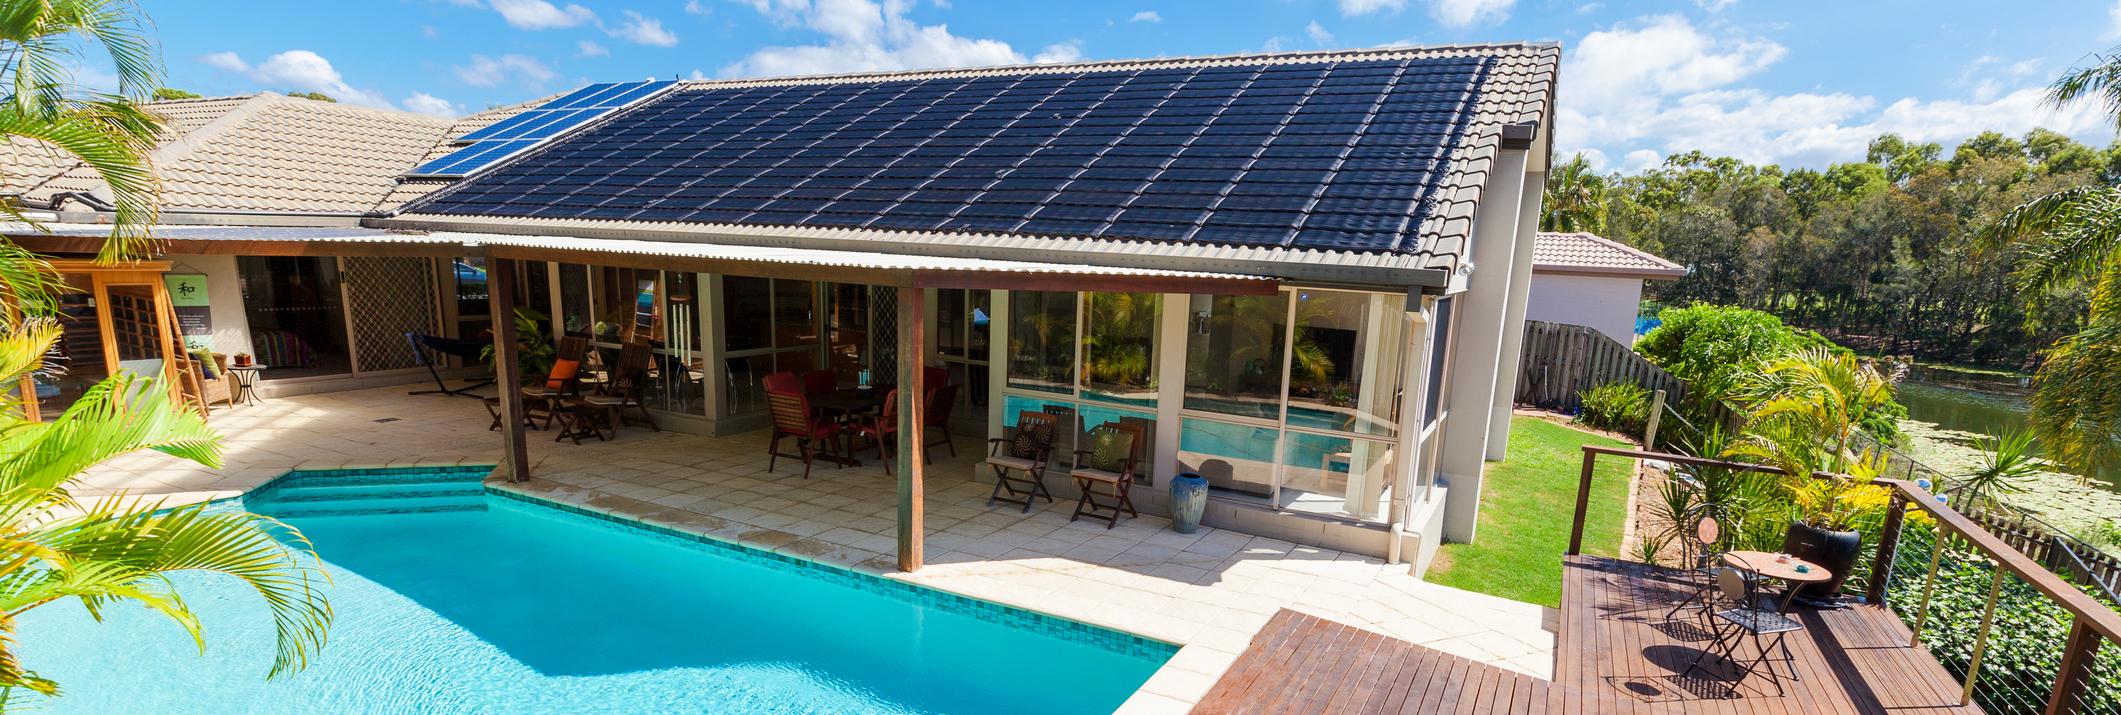 Paneles solares para piscinas: usos y precios